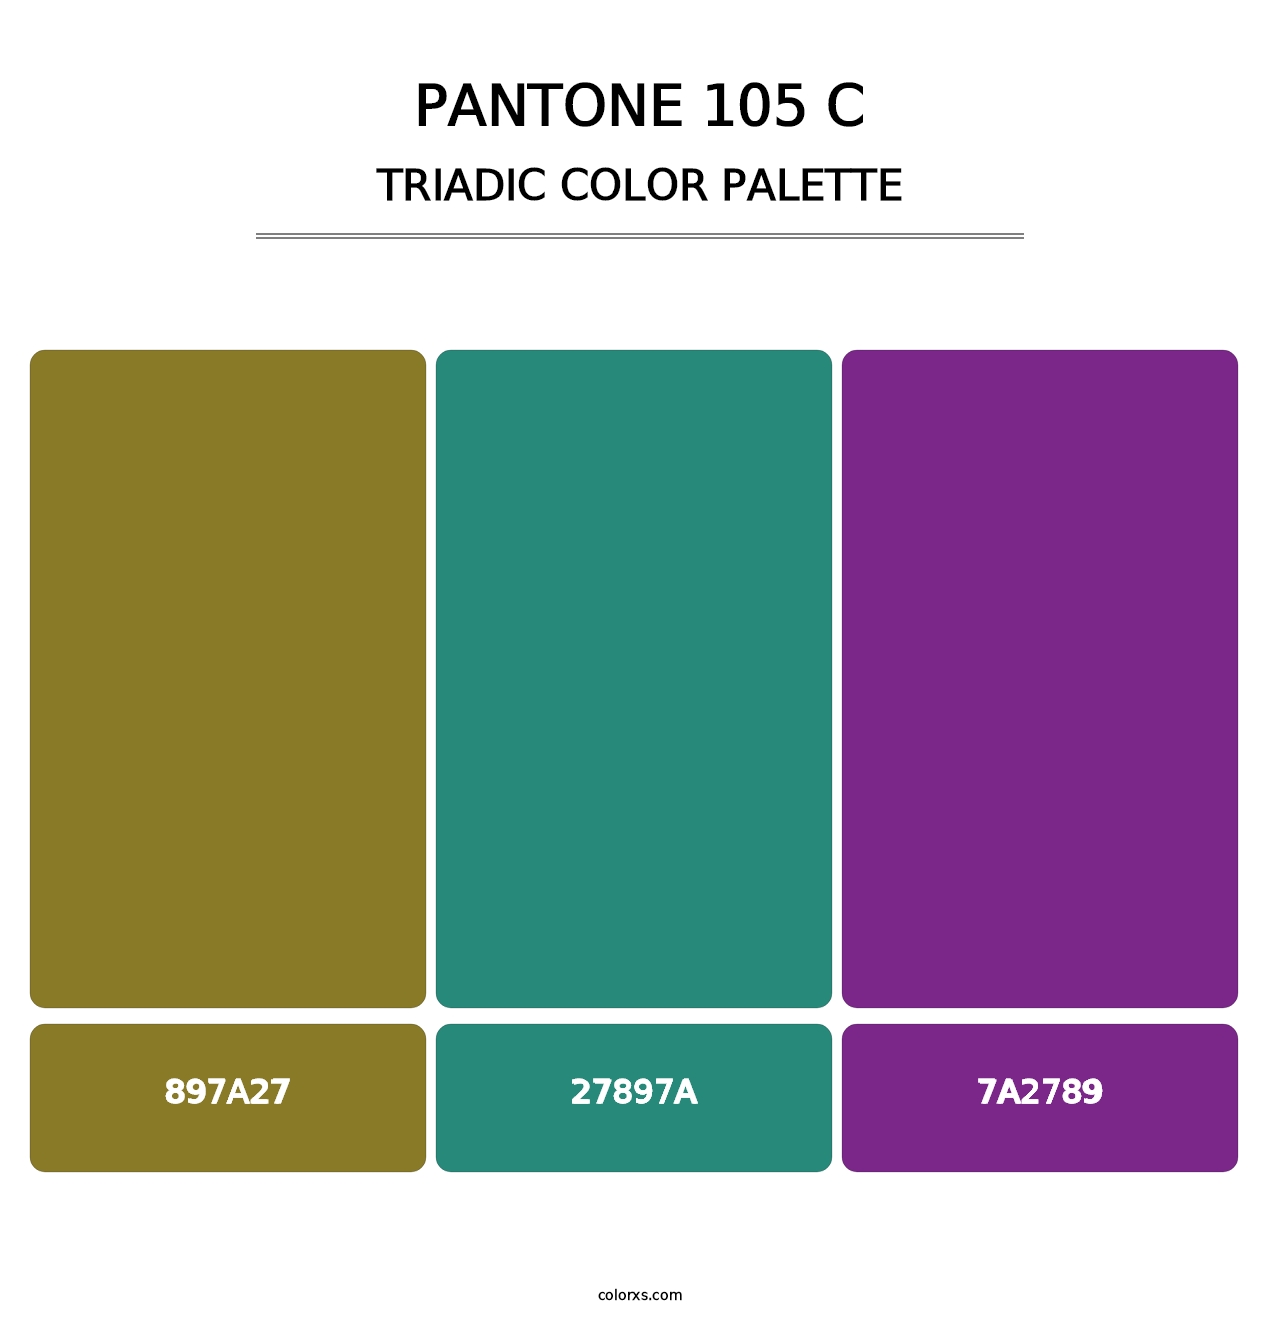 PANTONE 105 C - Triadic Color Palette